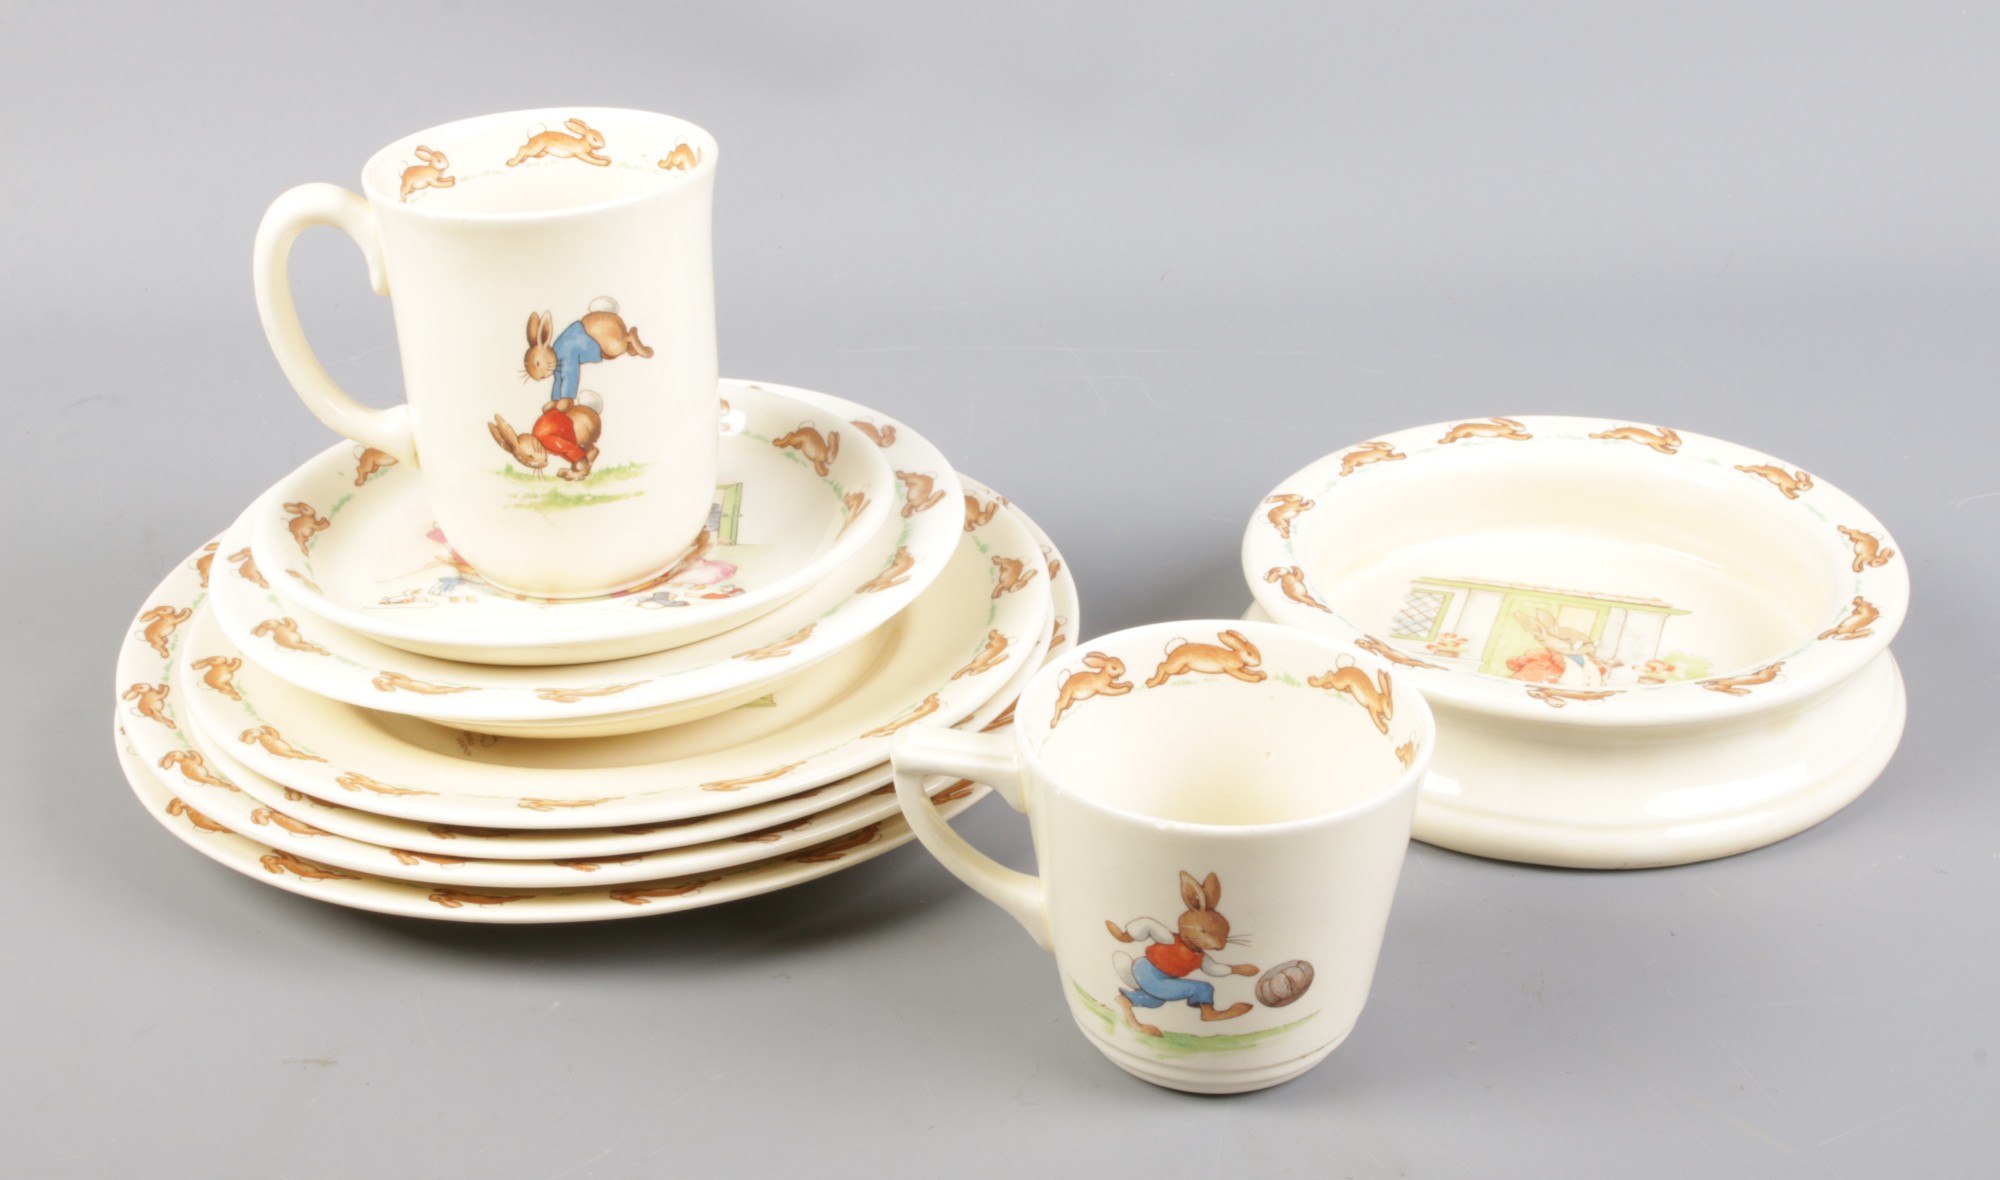 A quantity of Royal Doulton Bunnykins ceramics.